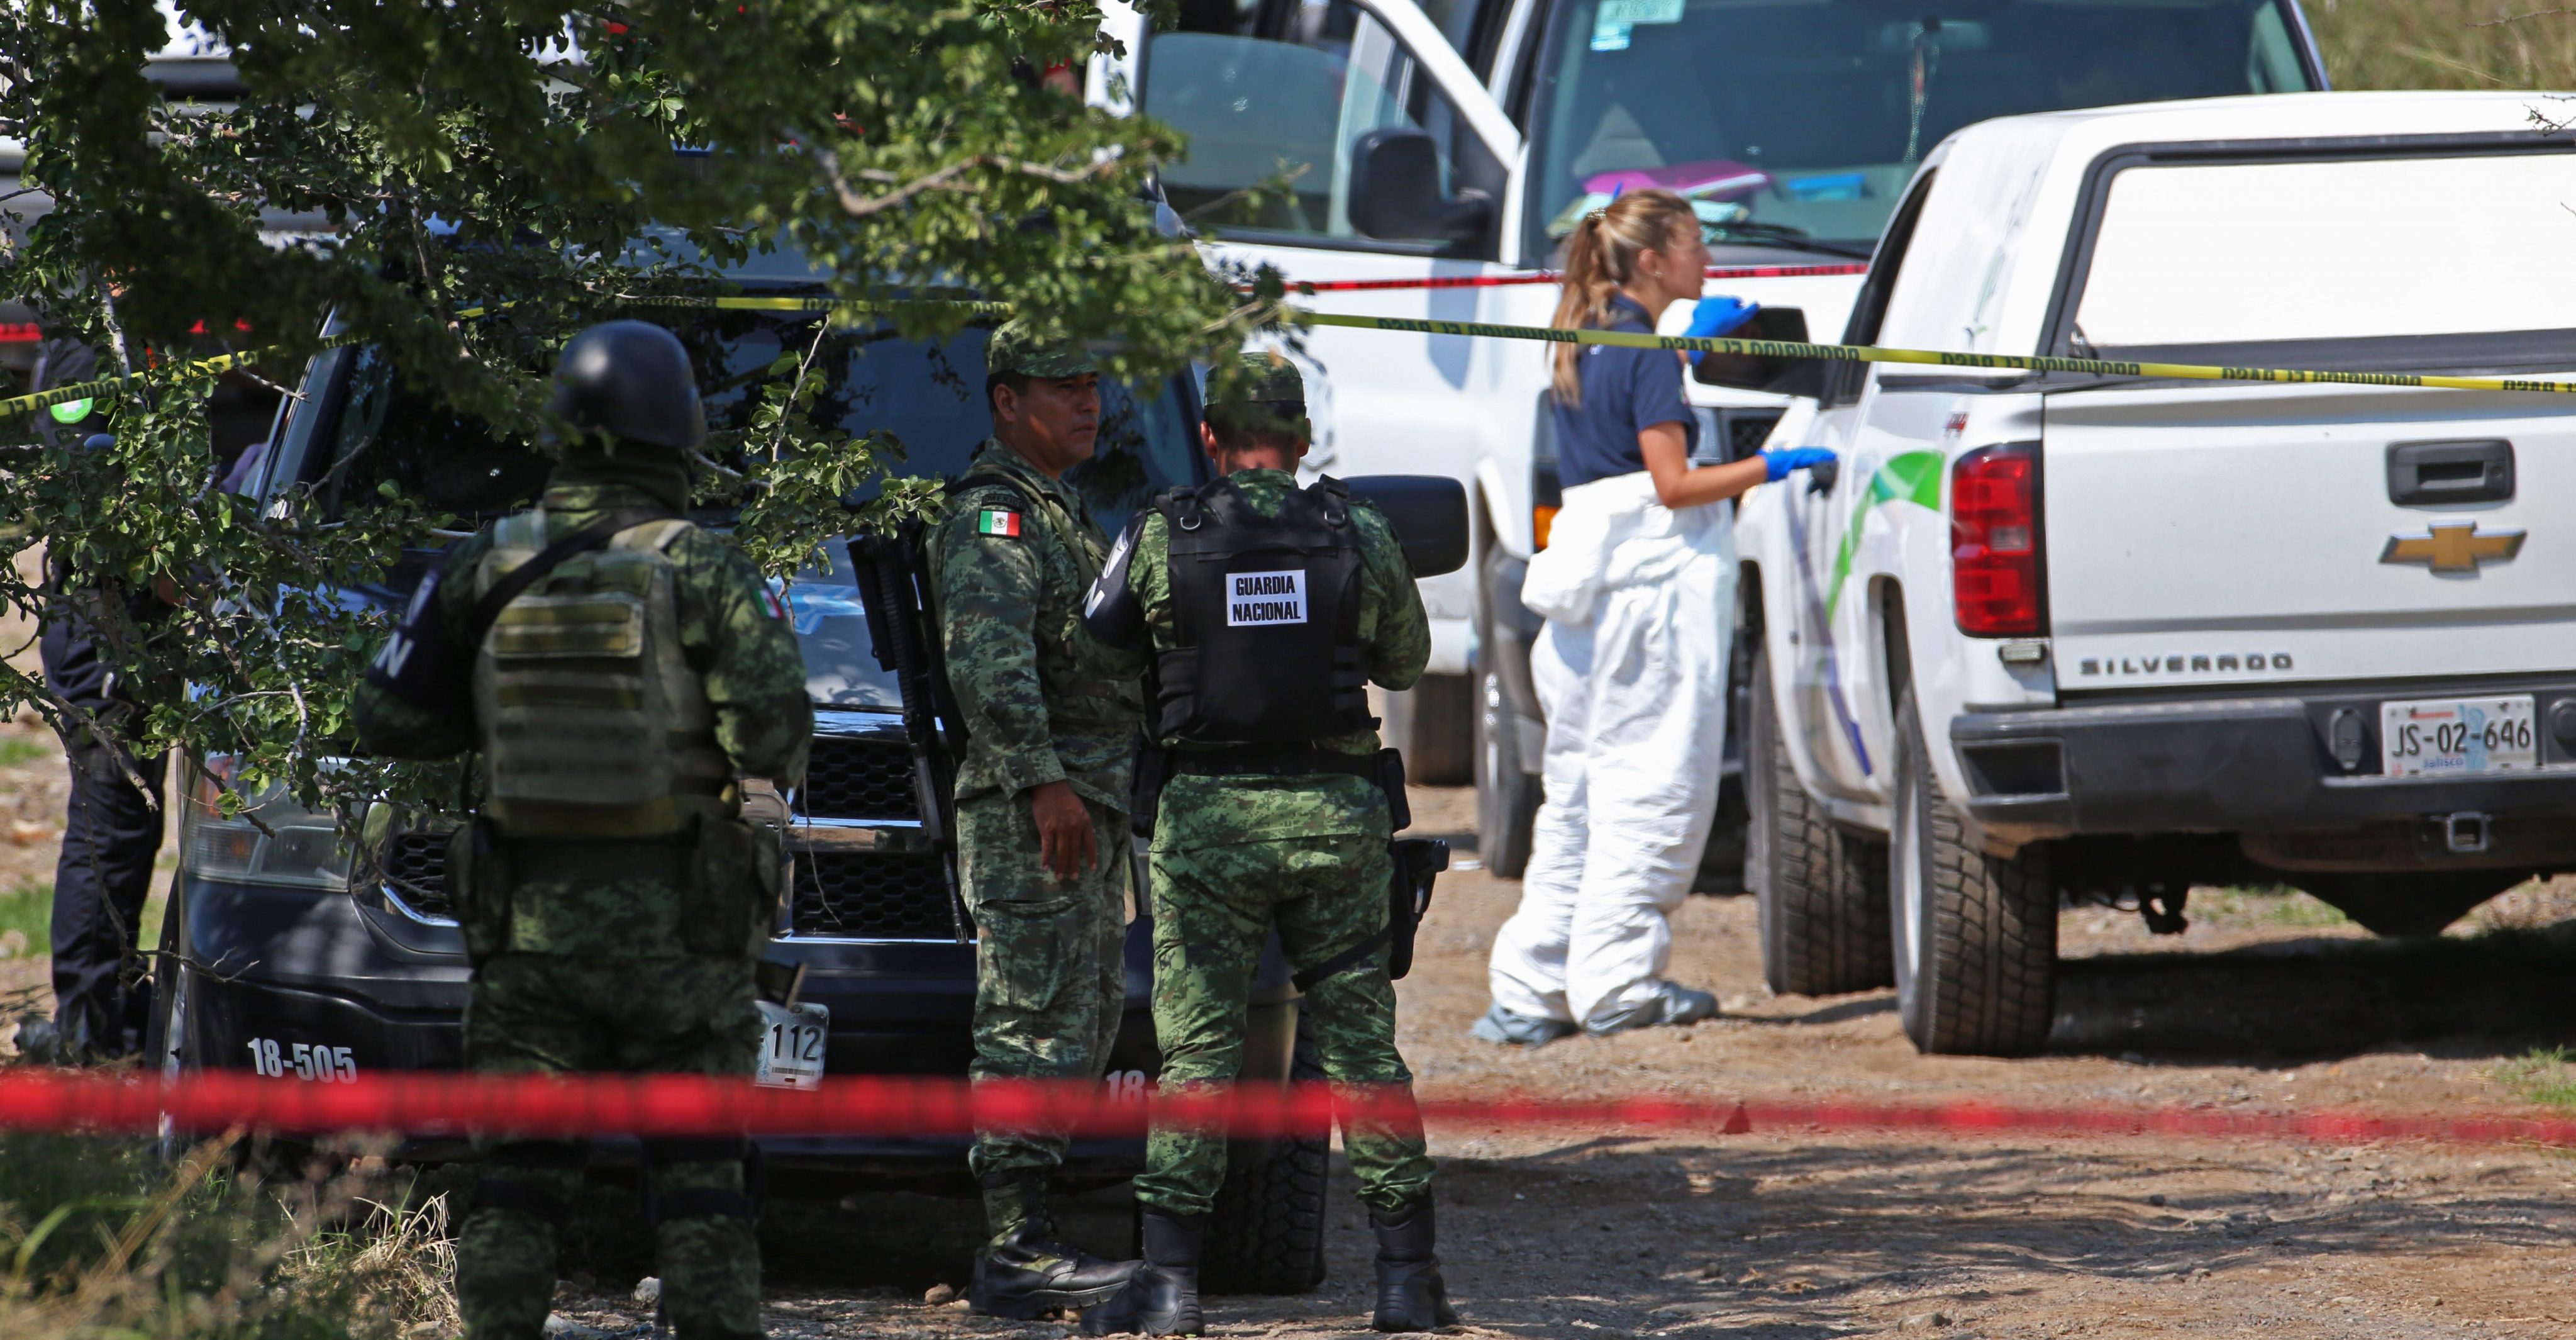 Hallan 7 cadáveres con impactos de bala dentro de vehículos en Tonalá